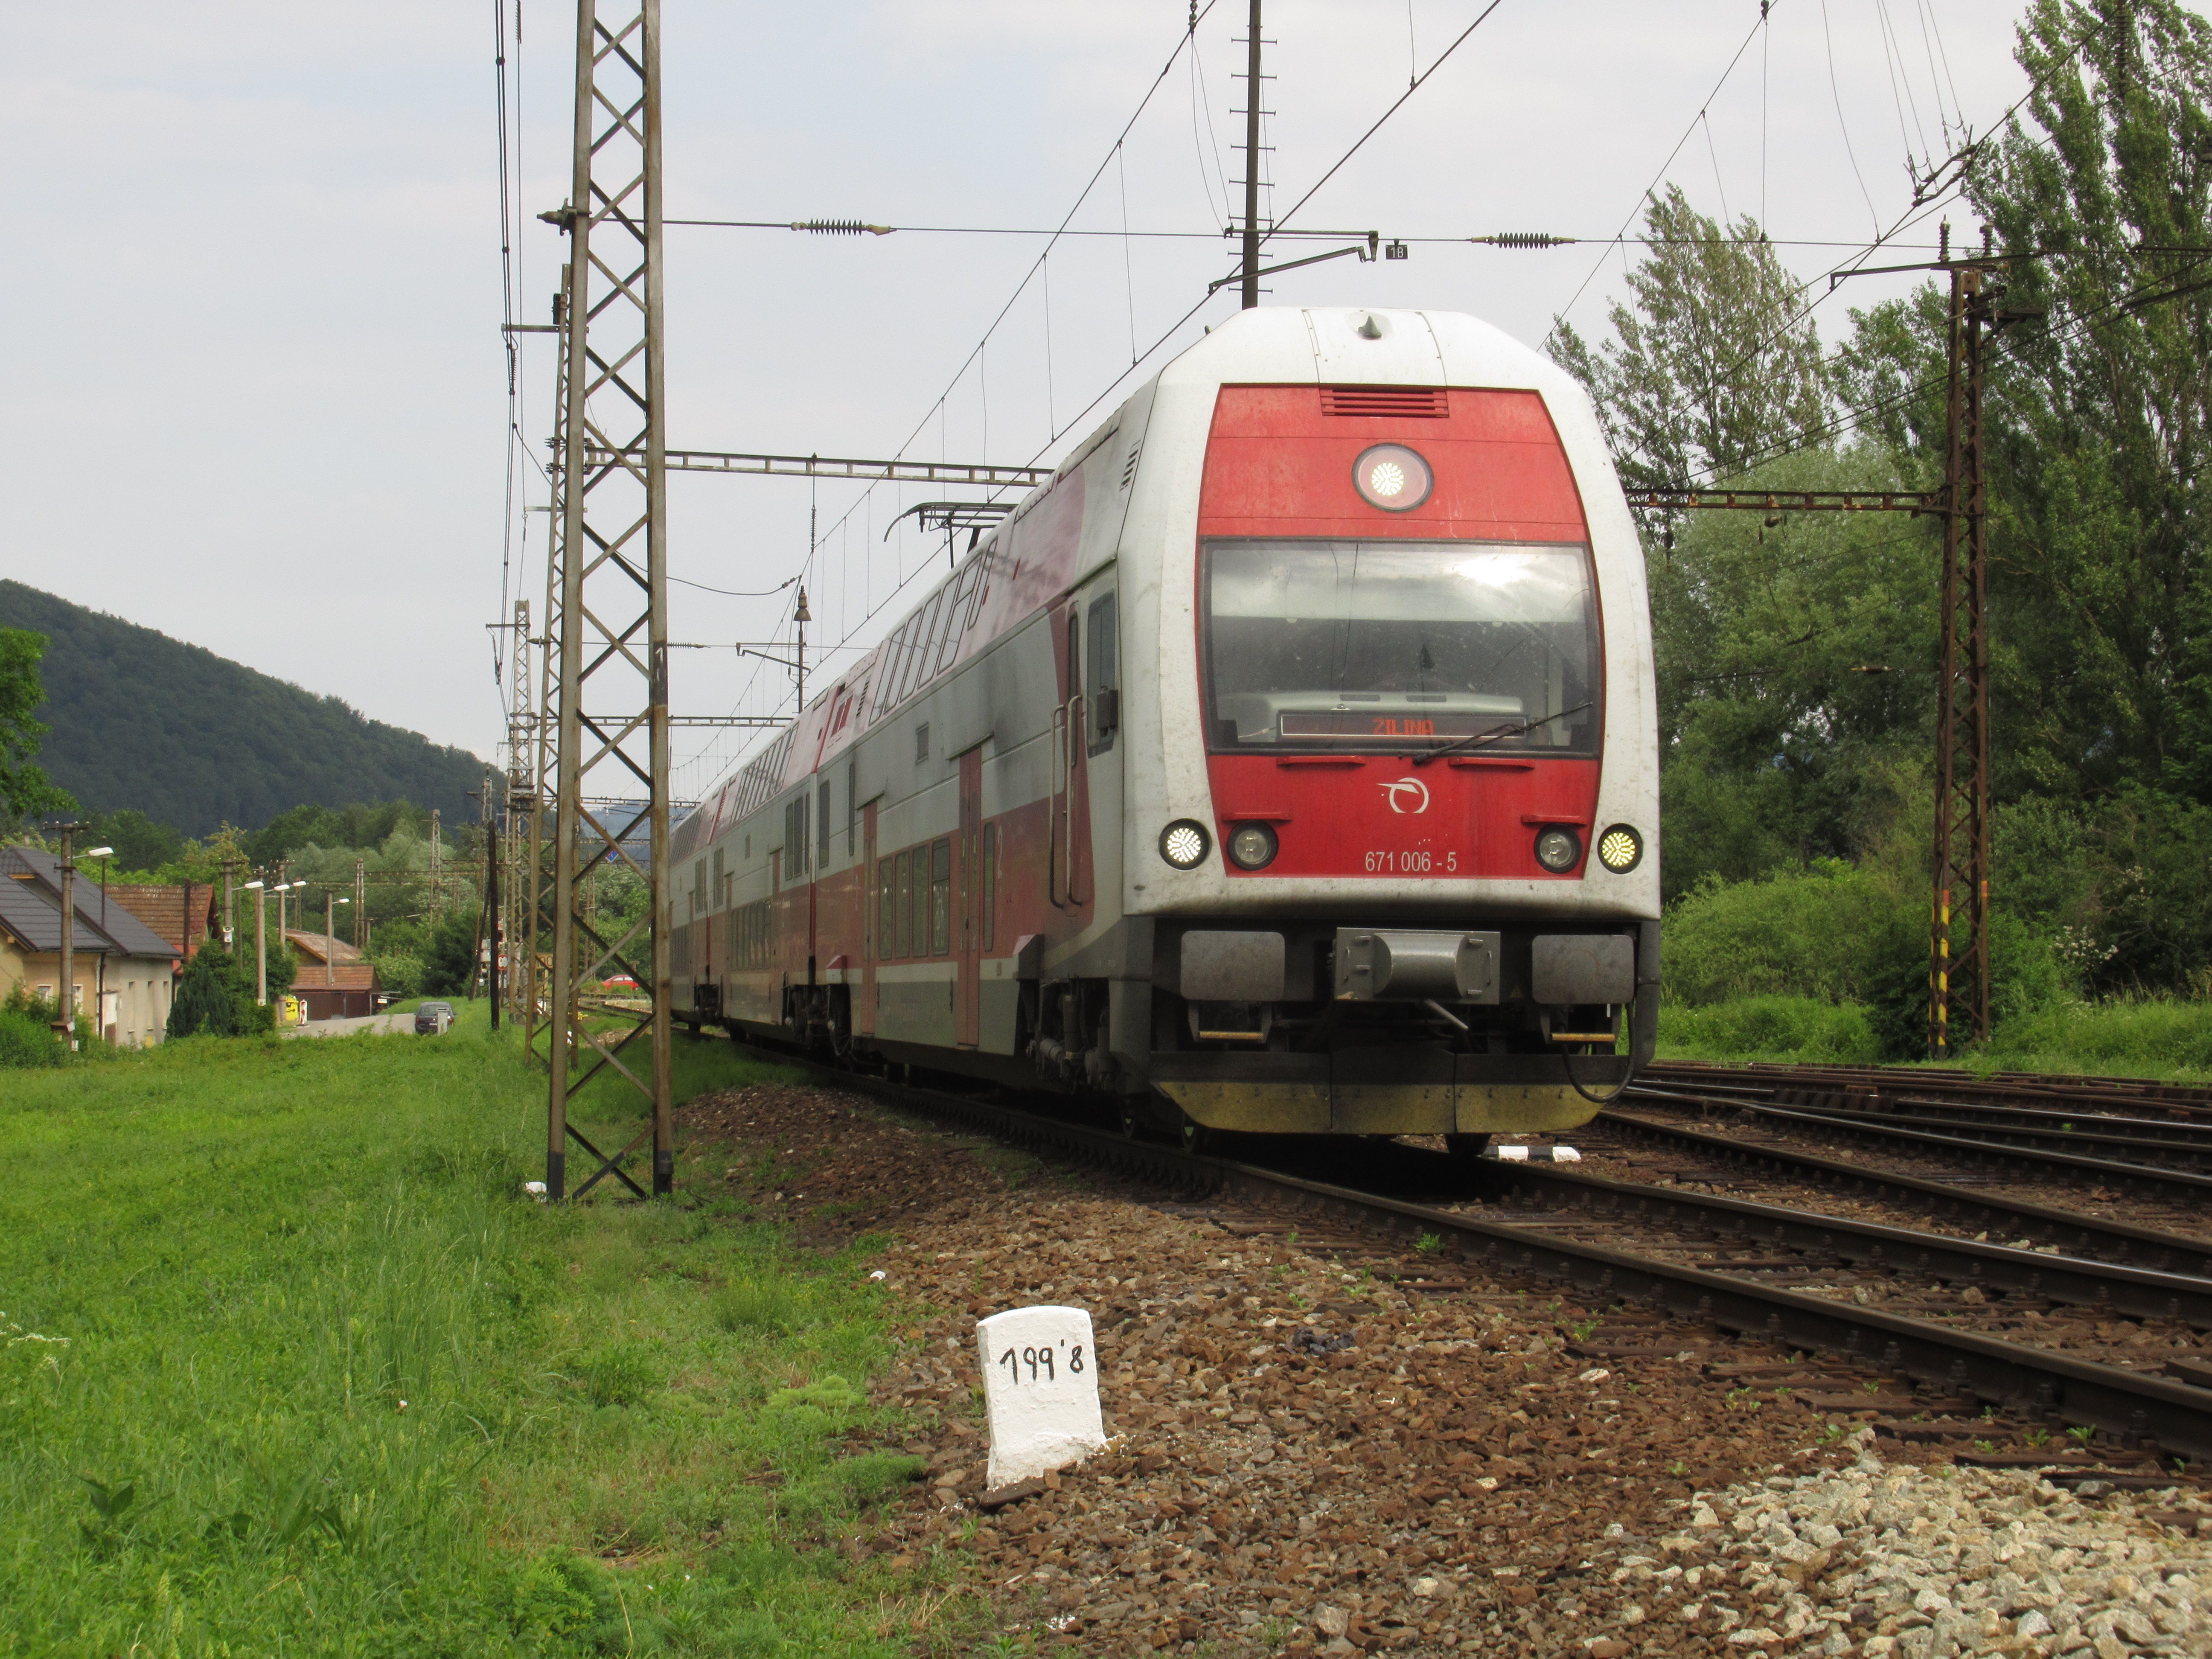 Vlajková loï regionální železnice na Slovensku – elektrické soupravy z plzeòské Škody používané pøedevším na modernizované koridorové trati smìrem na Bratislavu.